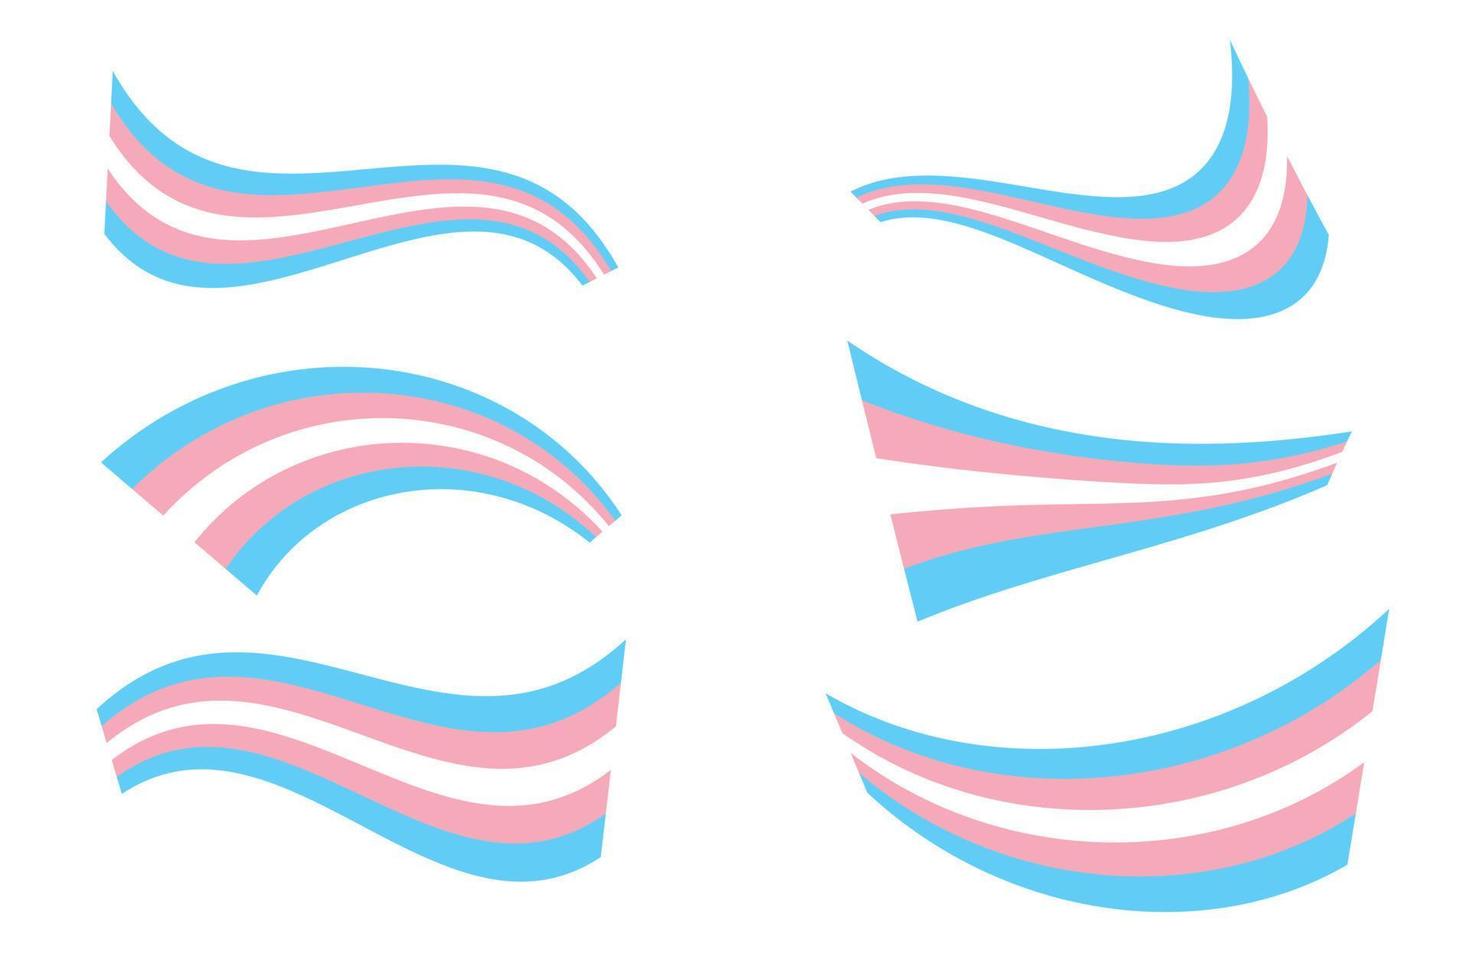 bandera del orgullo transgénero - bandera del orgullo a rayas azul claro, rosa y blanco, símbolo de la comunidad transgénero. conjunto de símbolos lgbt colección de diferentes banderas de formas envueltas retorcidas vector